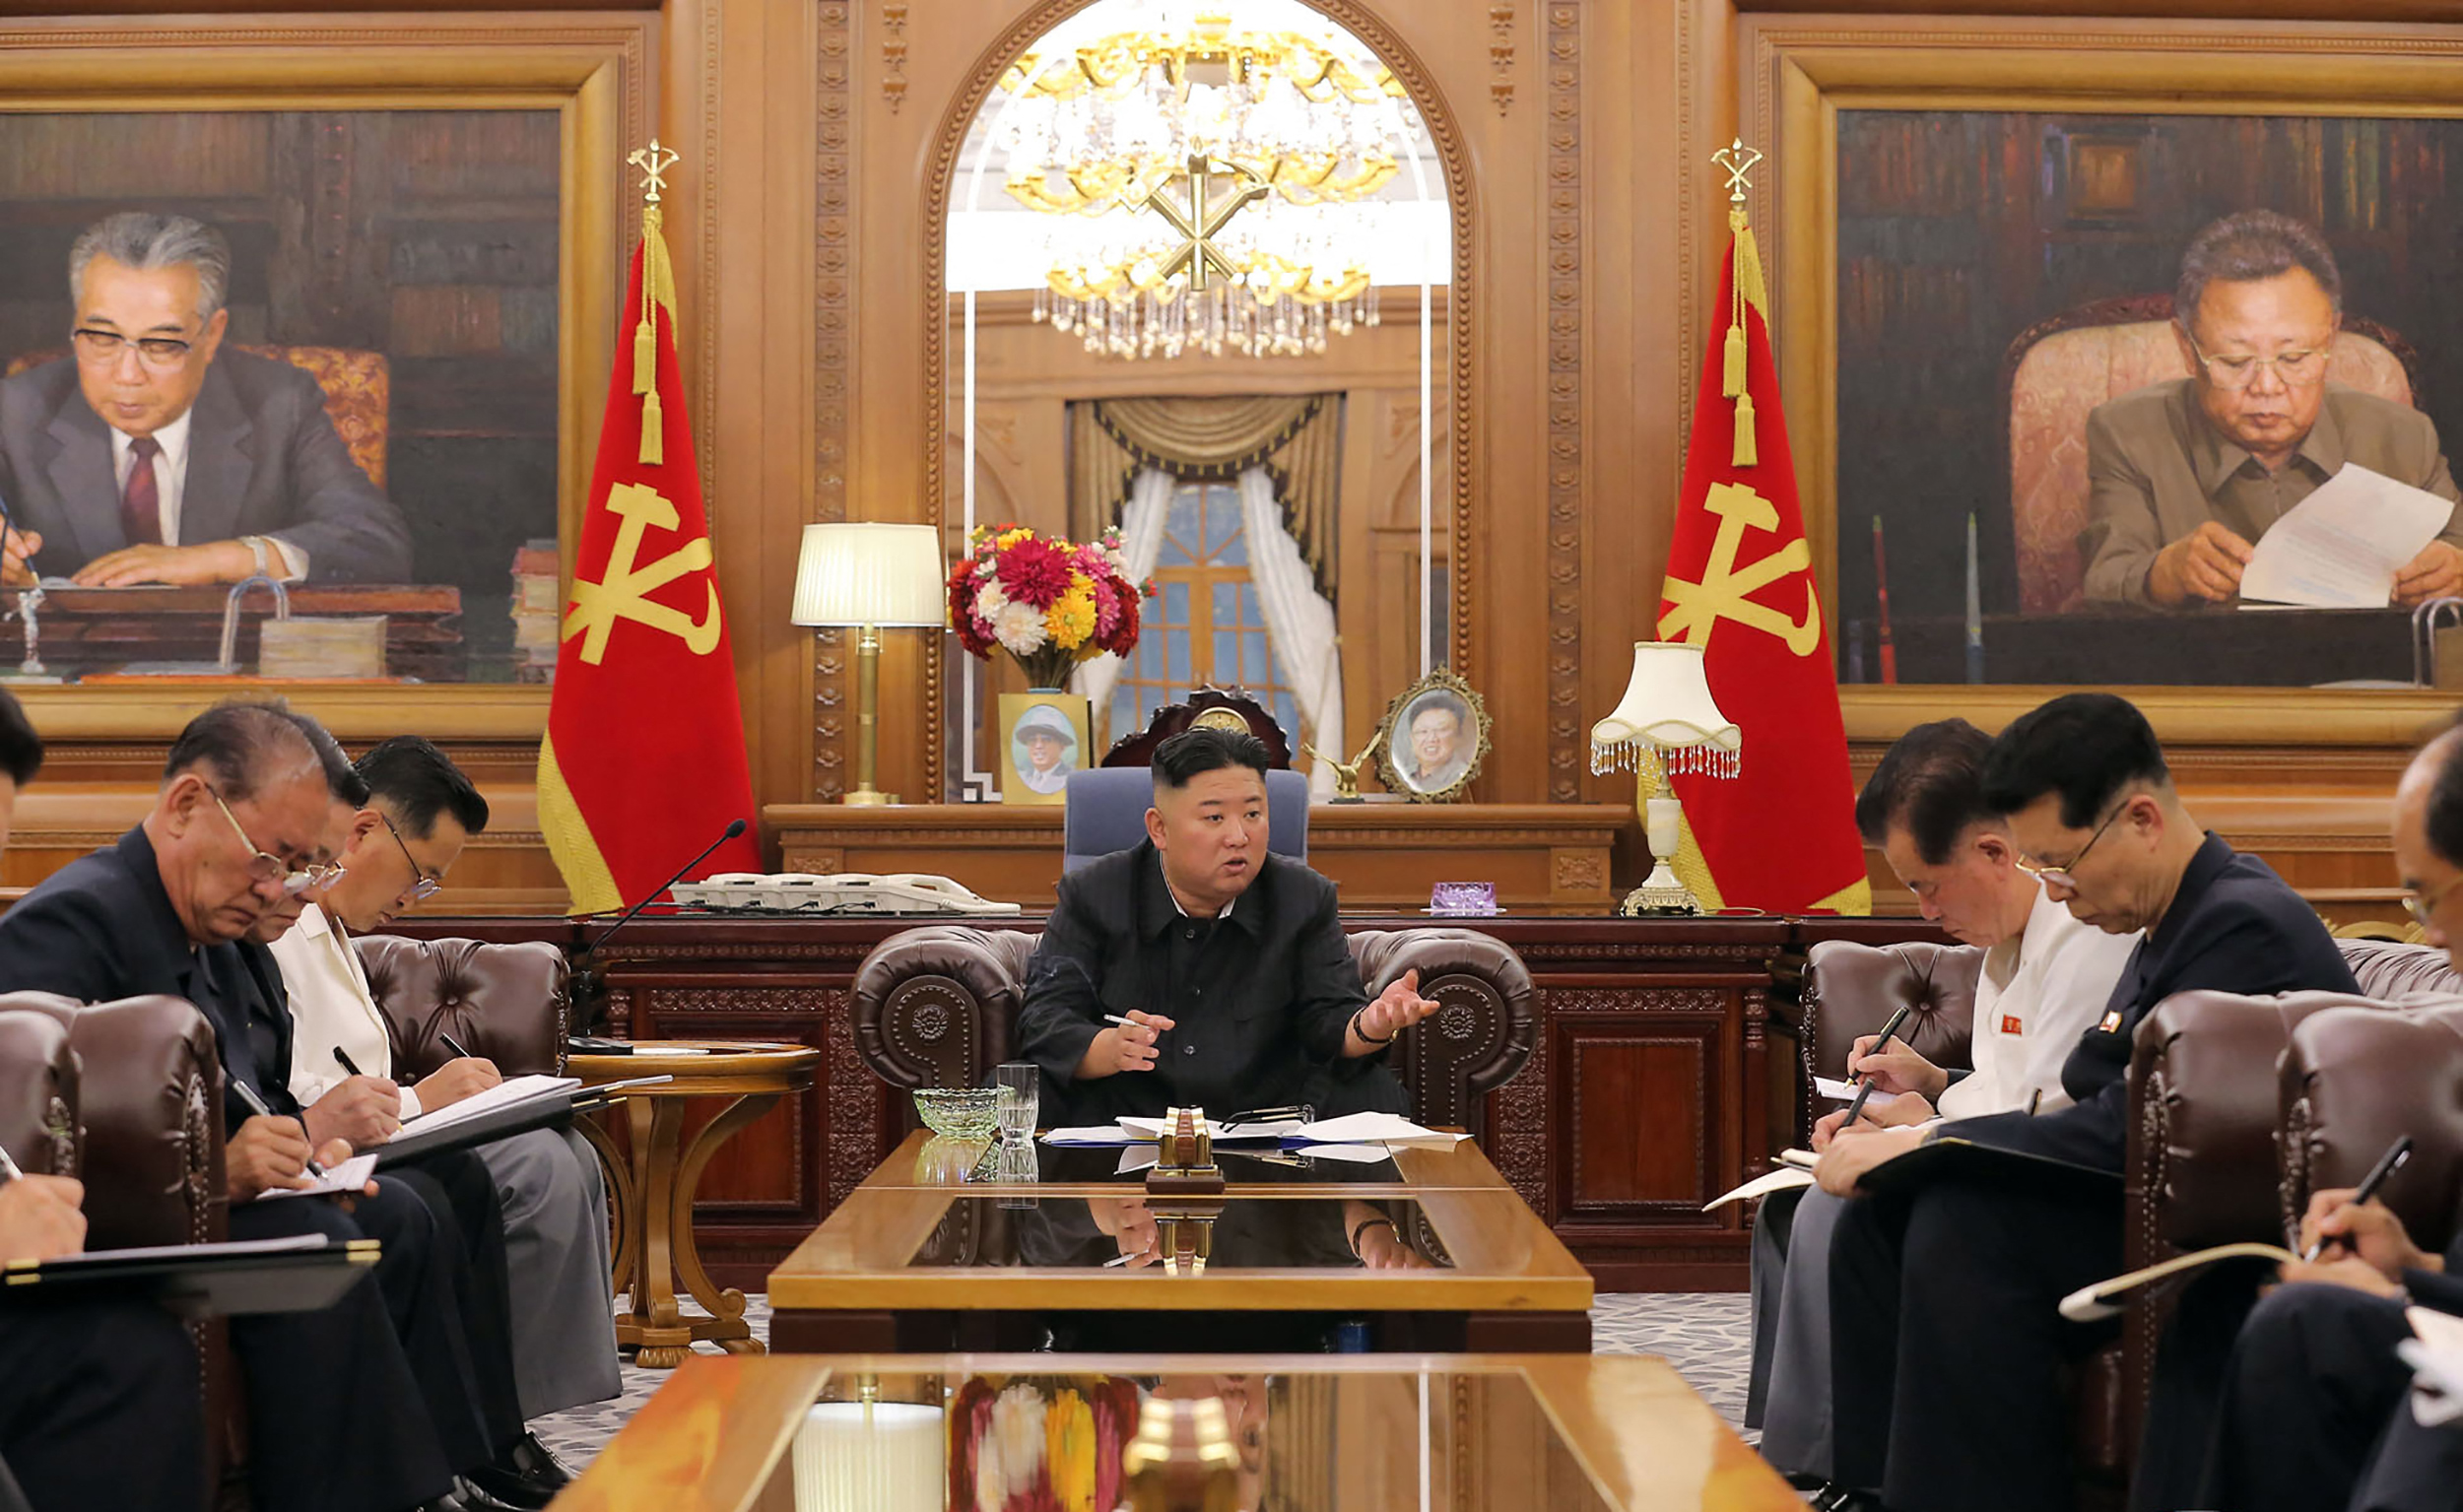 Fertőzőnek gondolja az élelmiszereket Észak-Korea diktátora, ezért inkább be sem engedi azokat